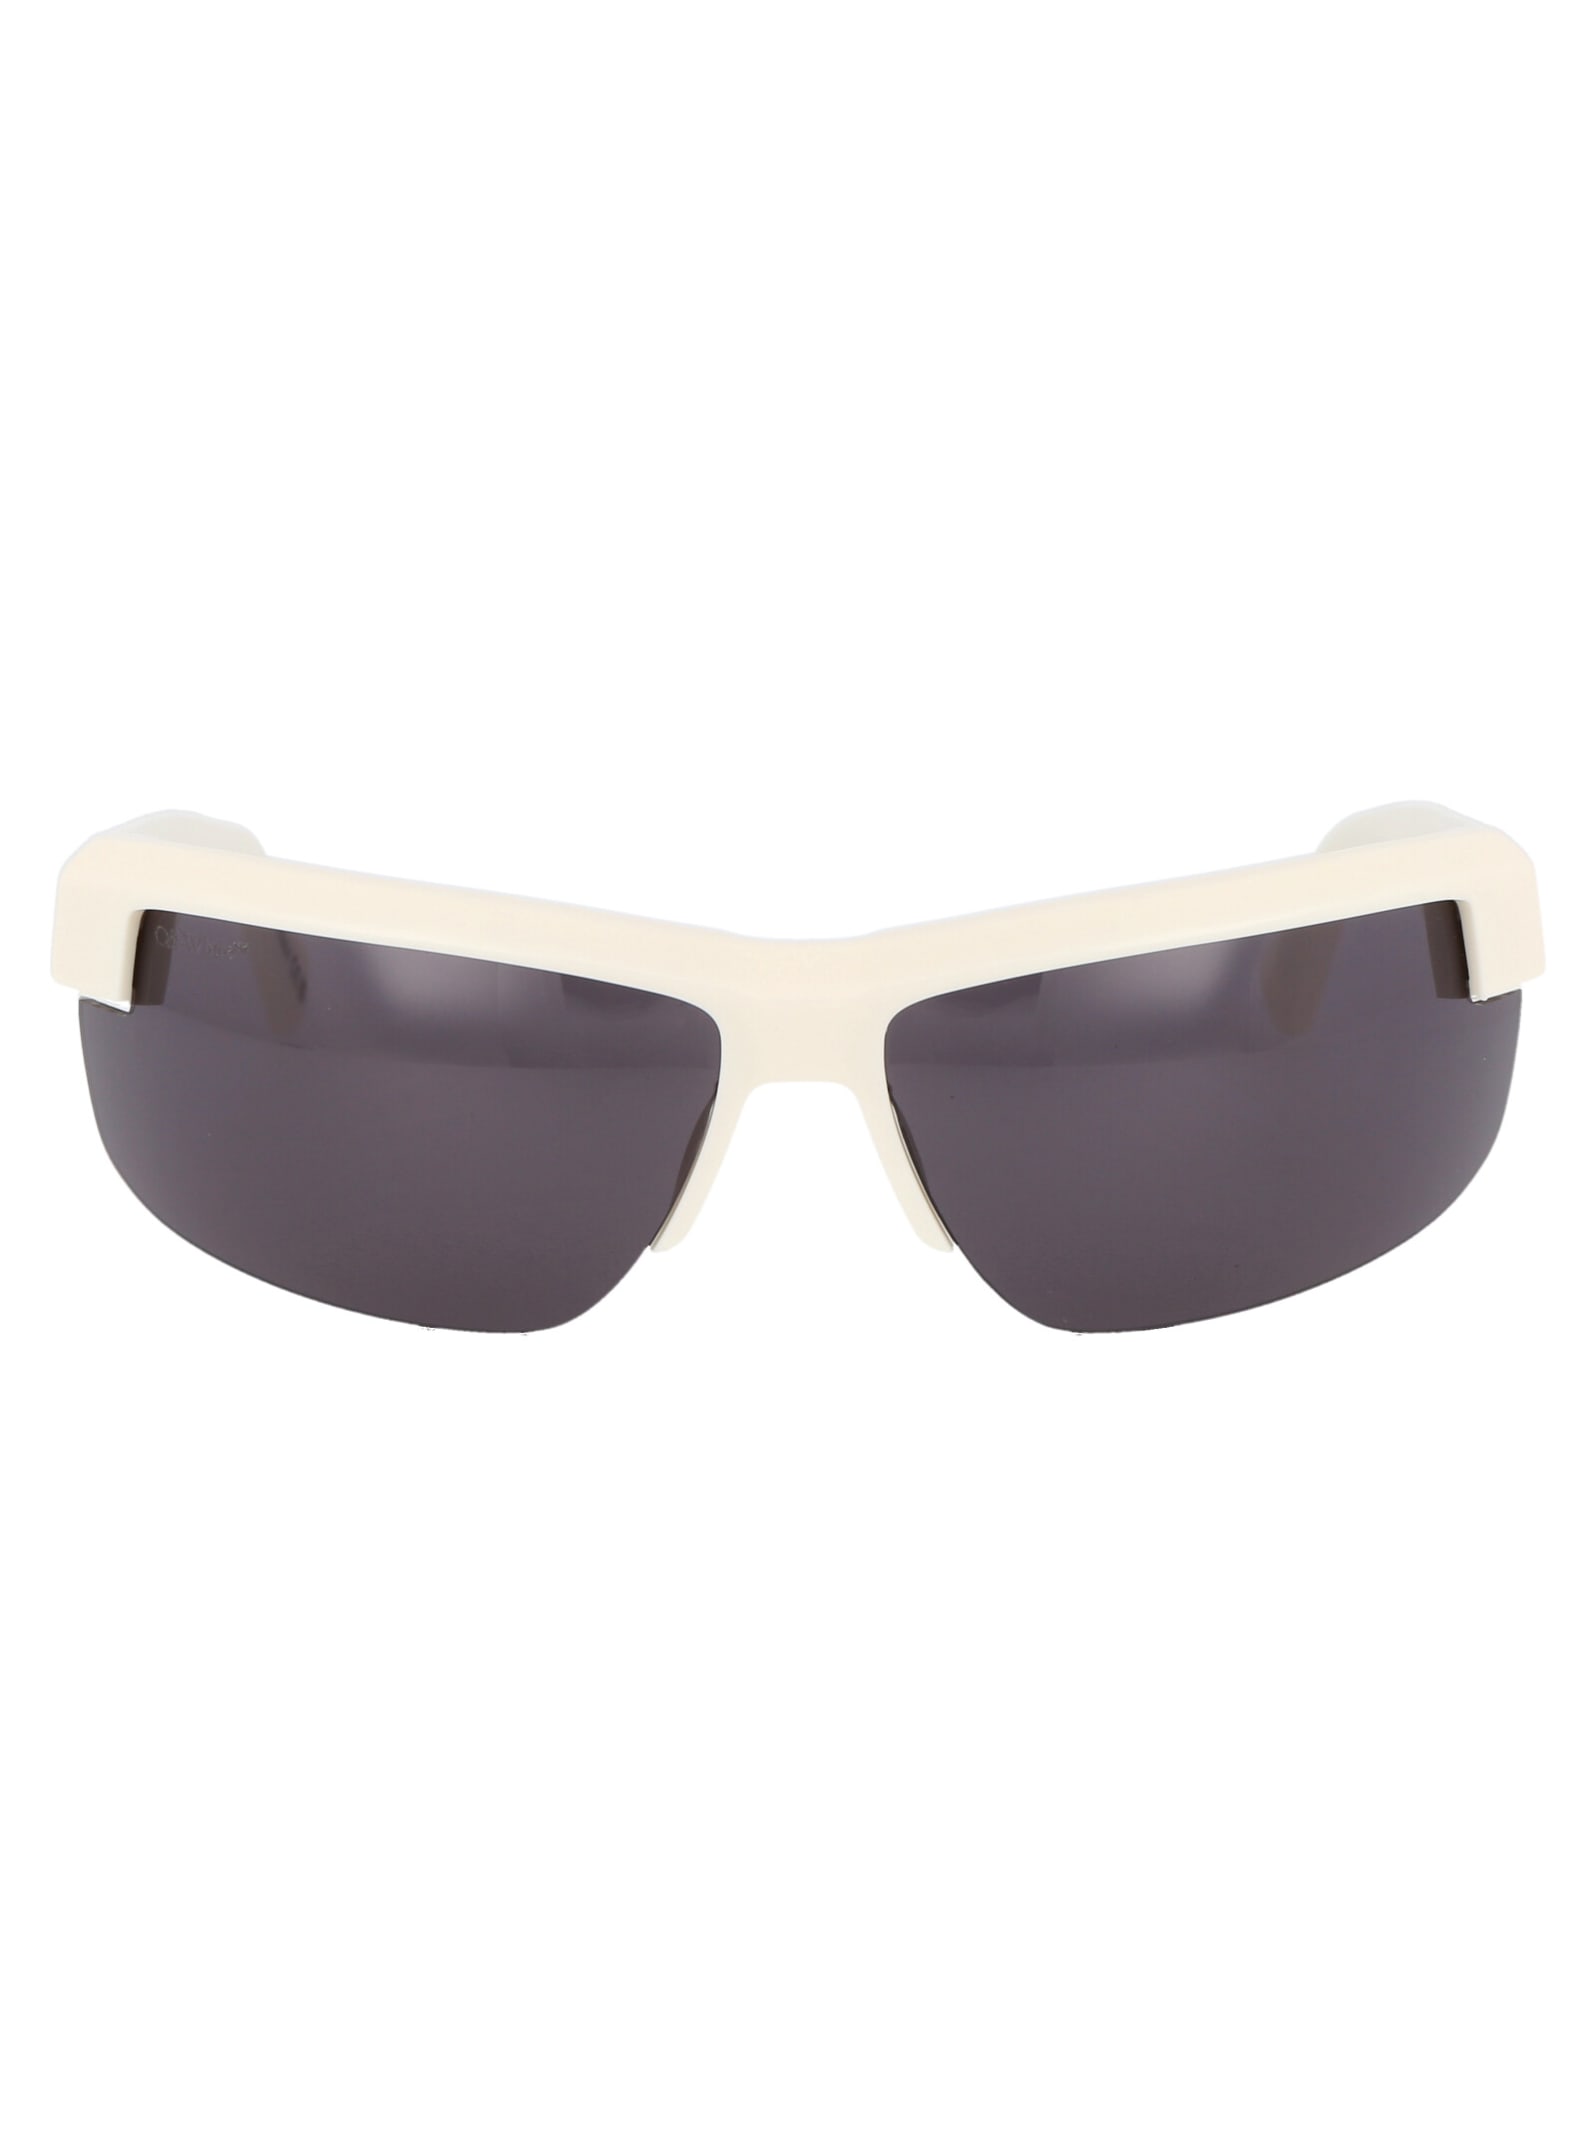 Off-White Toledo Sunglasses